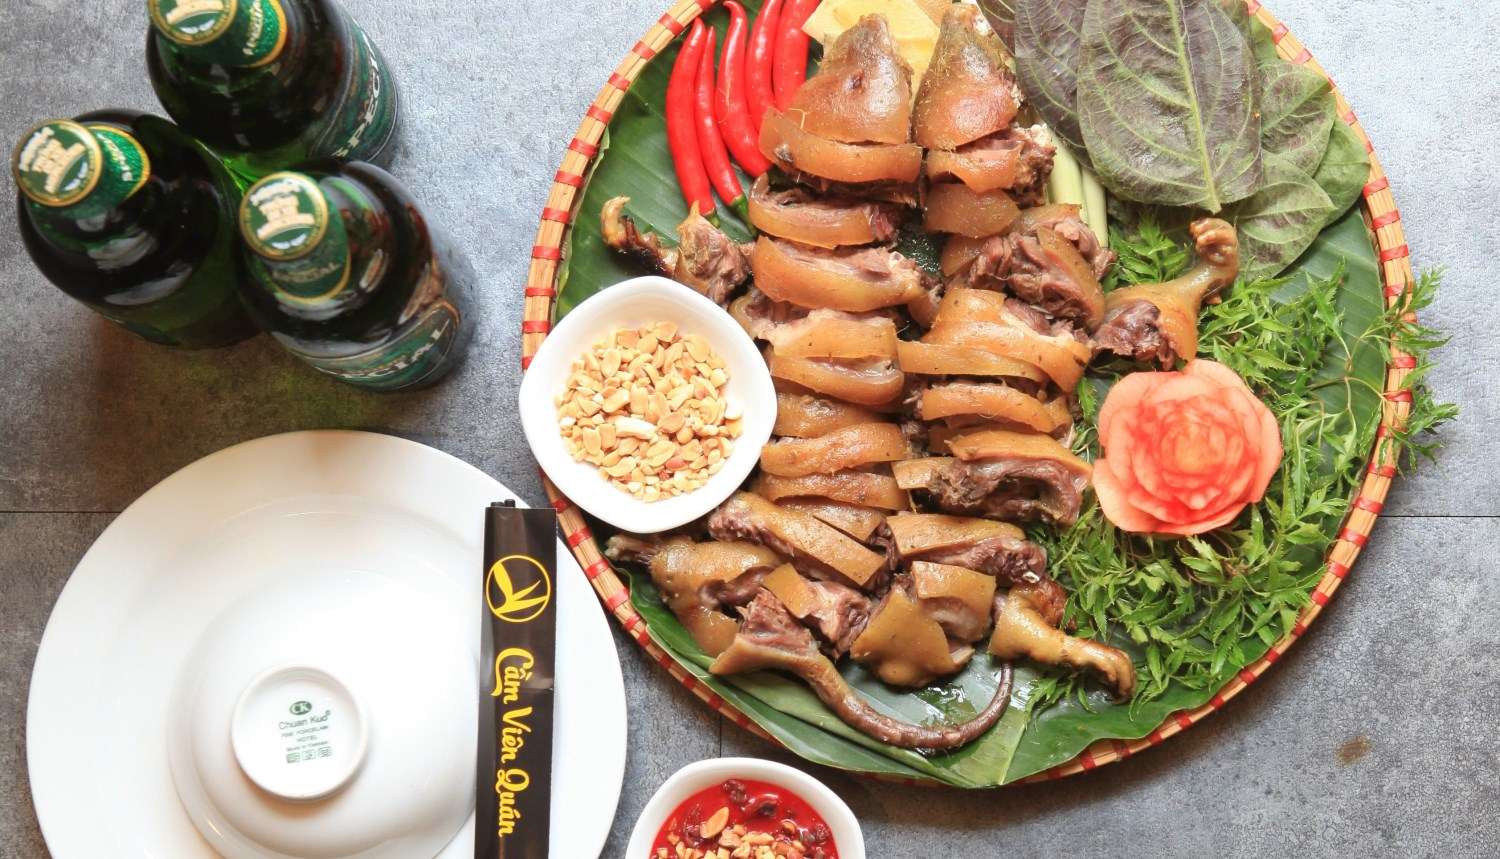 Cầm Viên Quán - Ẩm Thực Đồng Quê - Hoàng Ngân Ở Quận Cầu Giấy, Hà Nội |  Foody.Vn